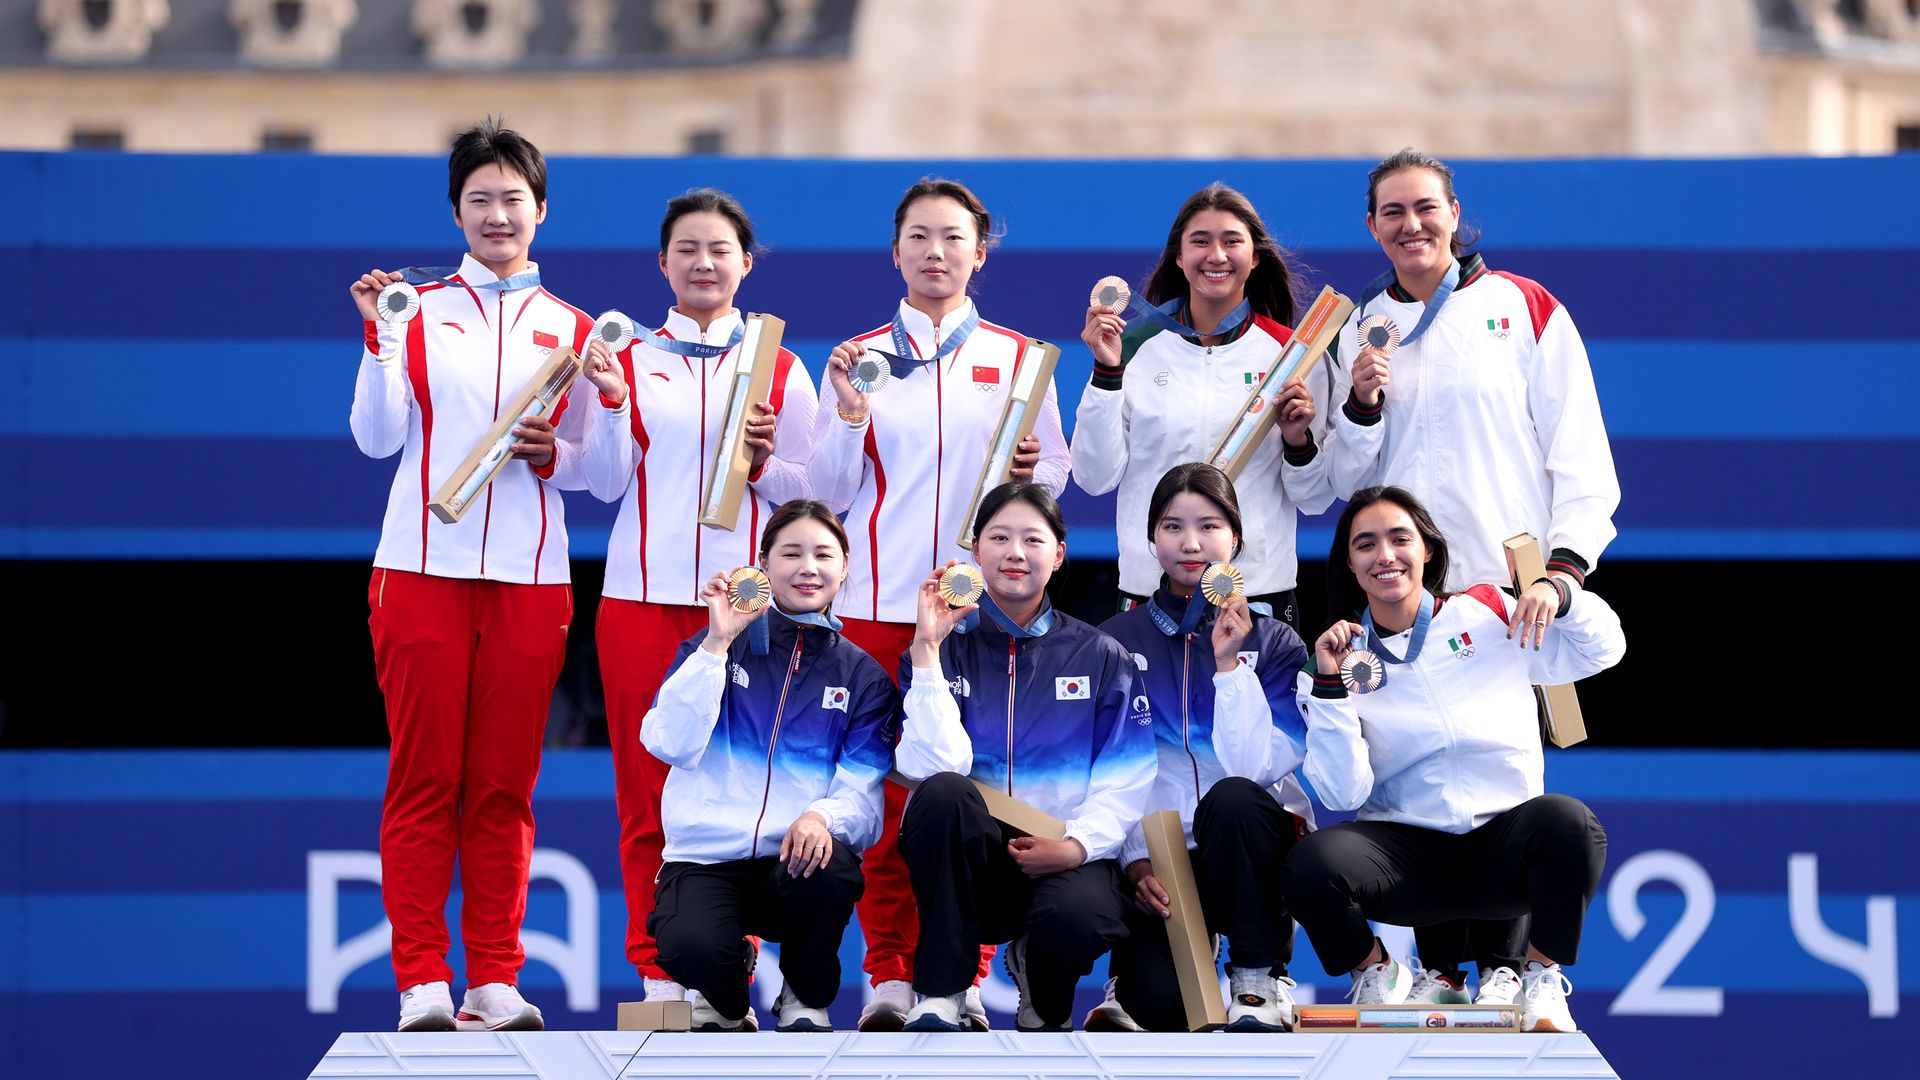 Las mexicanas compartieron el podio con los equipos de República de Corea y República de China, quienes se llevaron el oro y la plata respectivamente